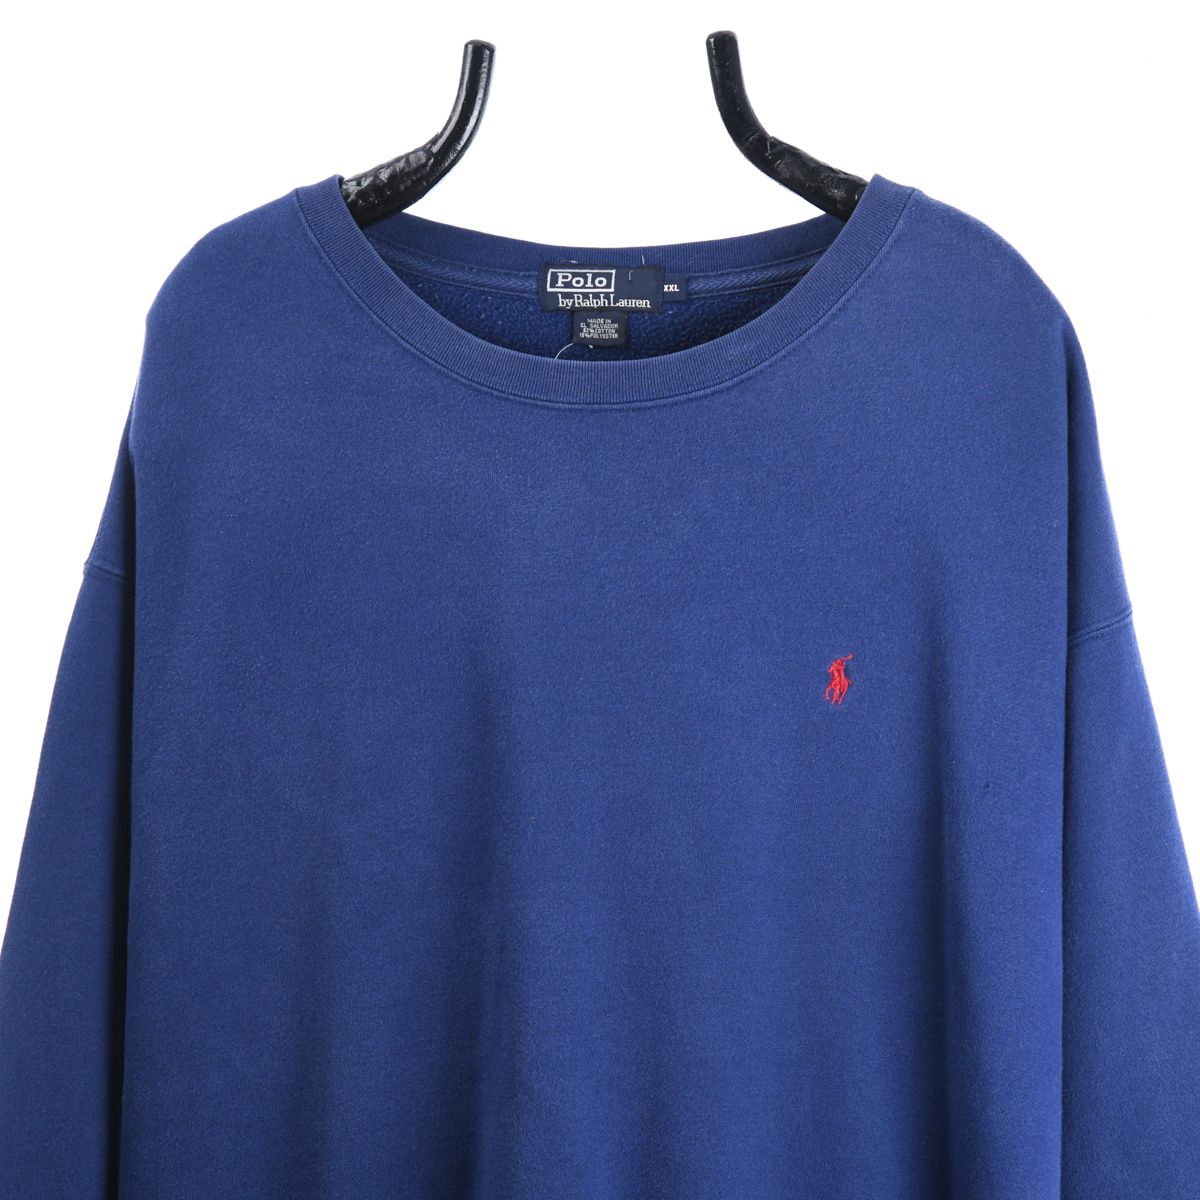 Ralph Lauren Blue Sweatshirt